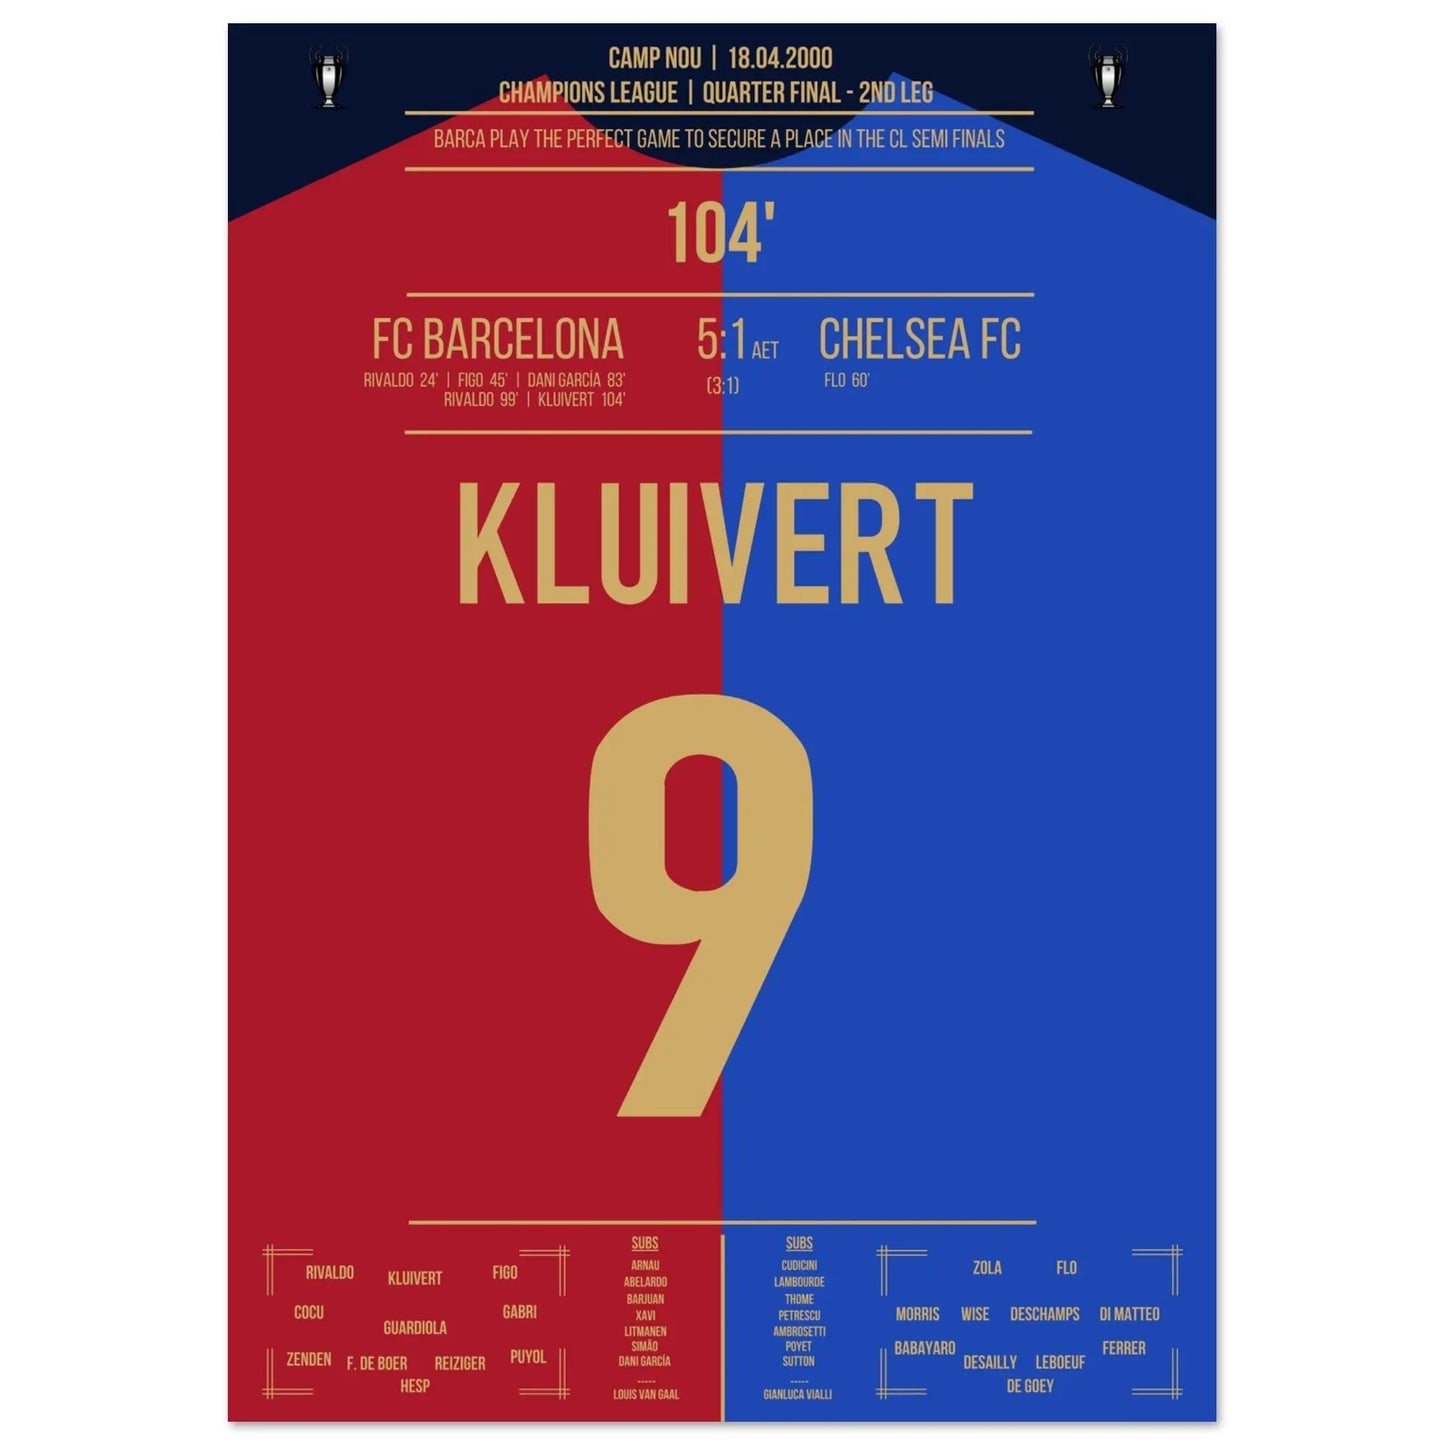 El gol de Kluivert en la "Remontada" del Barça contra el Chelsea en 2000